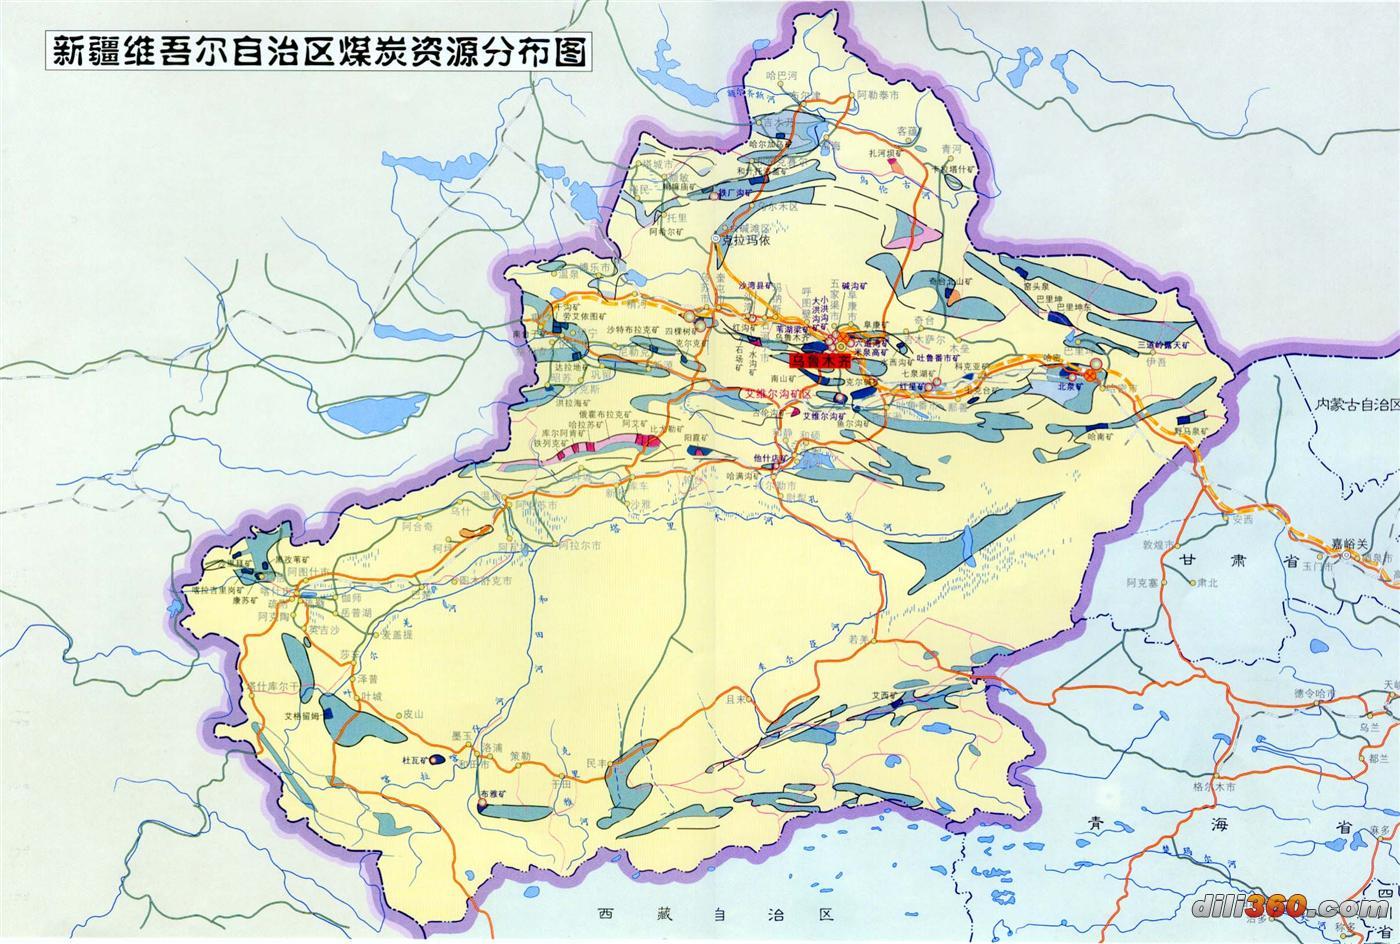 [分省图]中国煤炭资源分布图-地图专区-地图专区图片